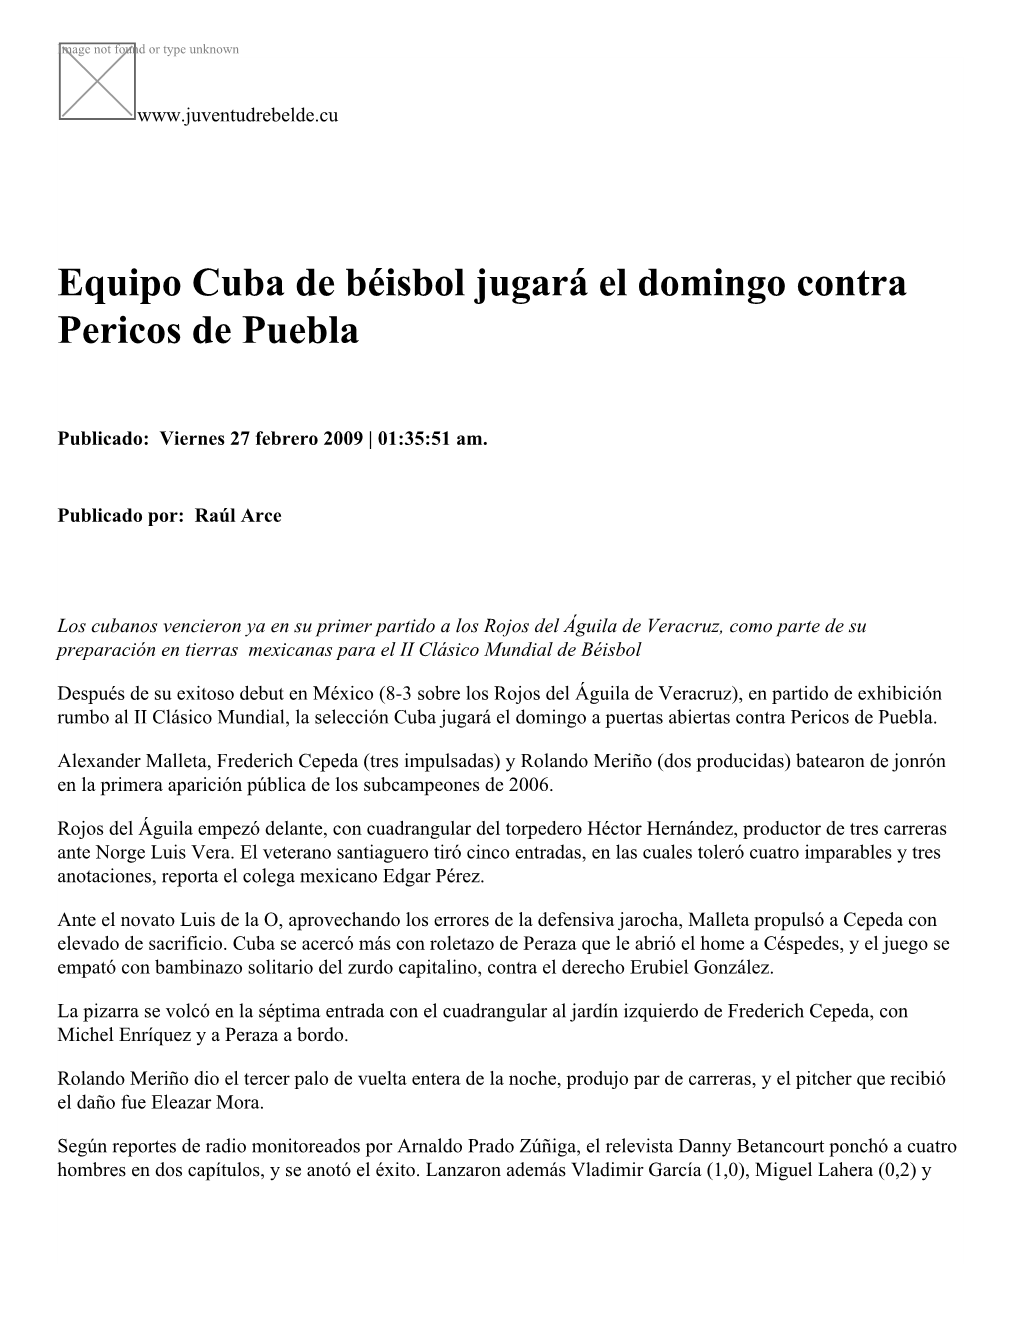 Equipo Cuba De Béisbol Jugará El Domingo Contra Pericos De Puebla